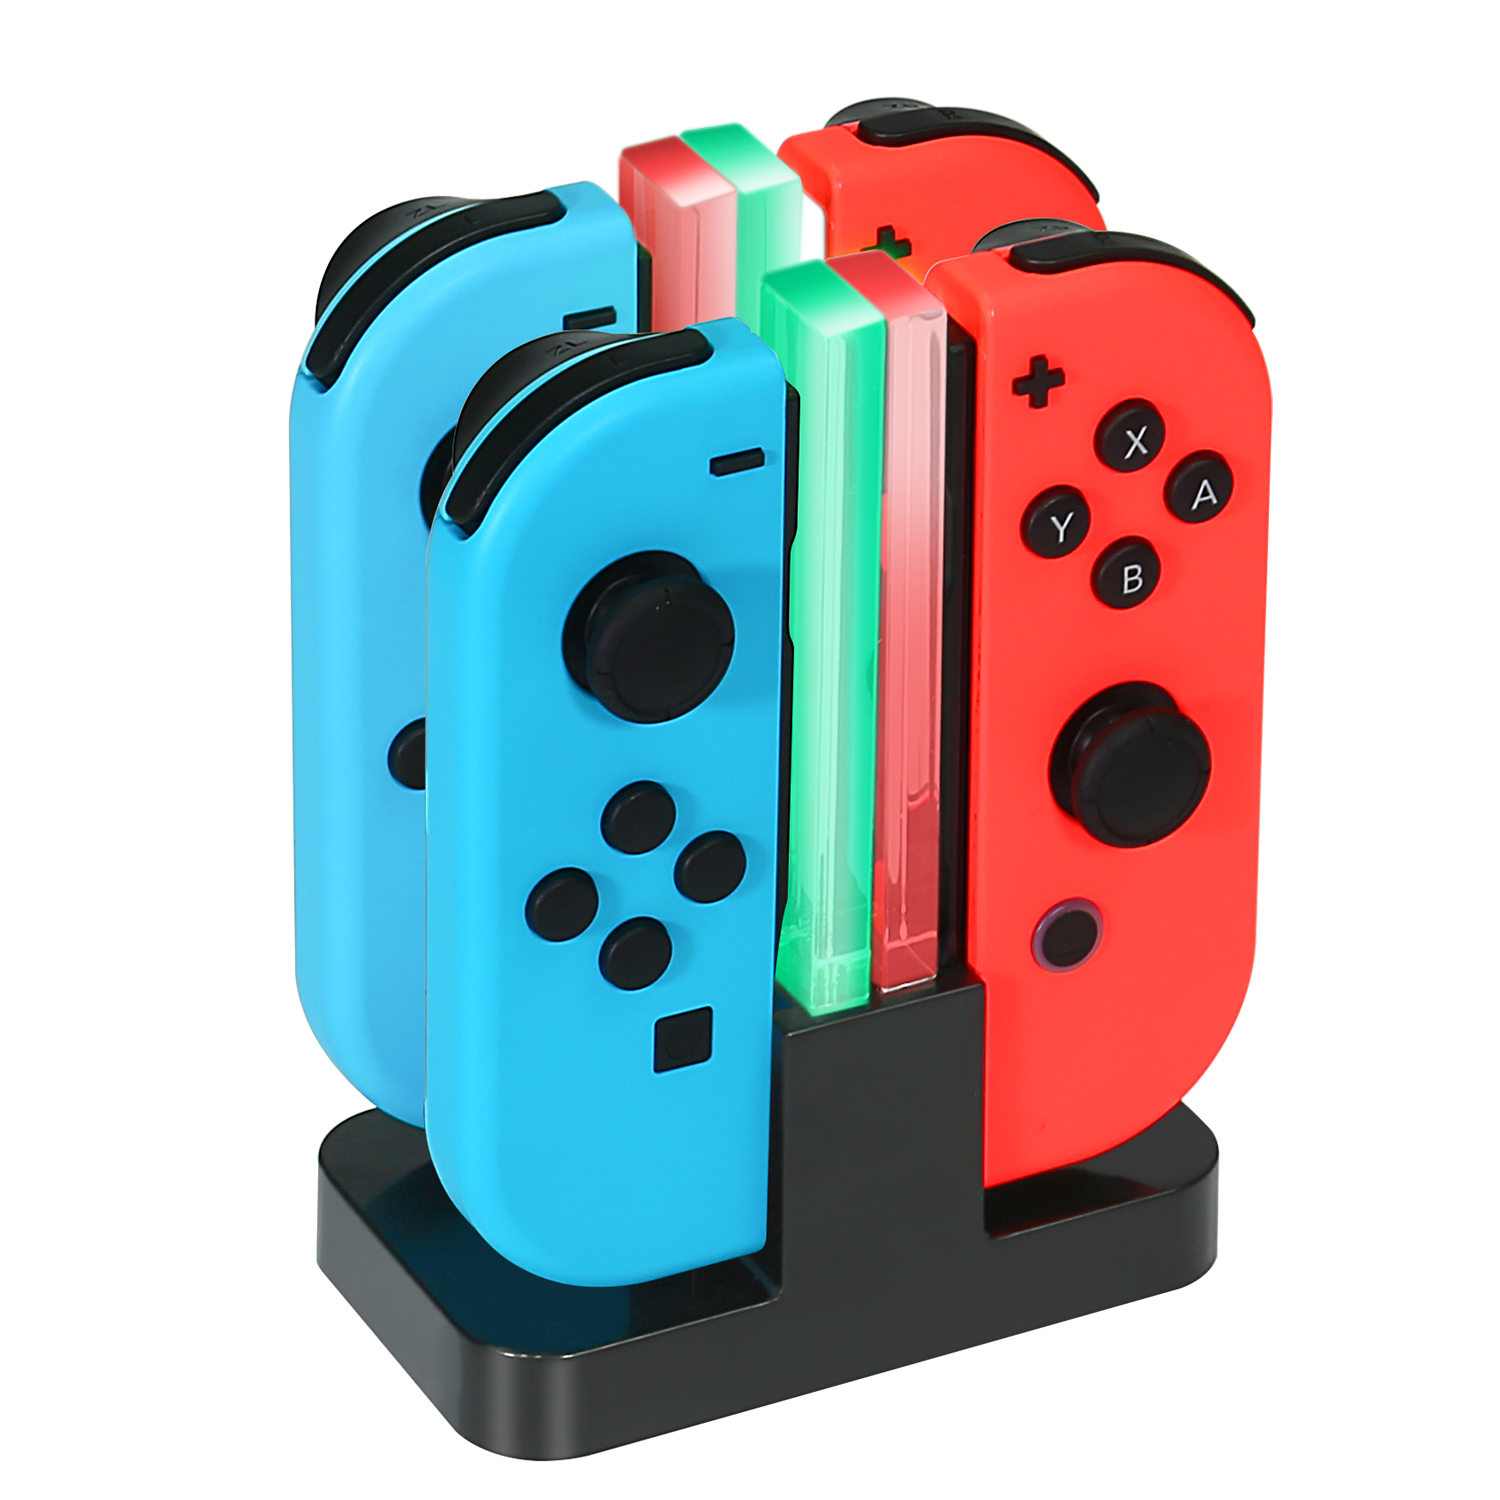 KINGTOP Base de carga para los controladores Joy-Con de Nintendo Switch